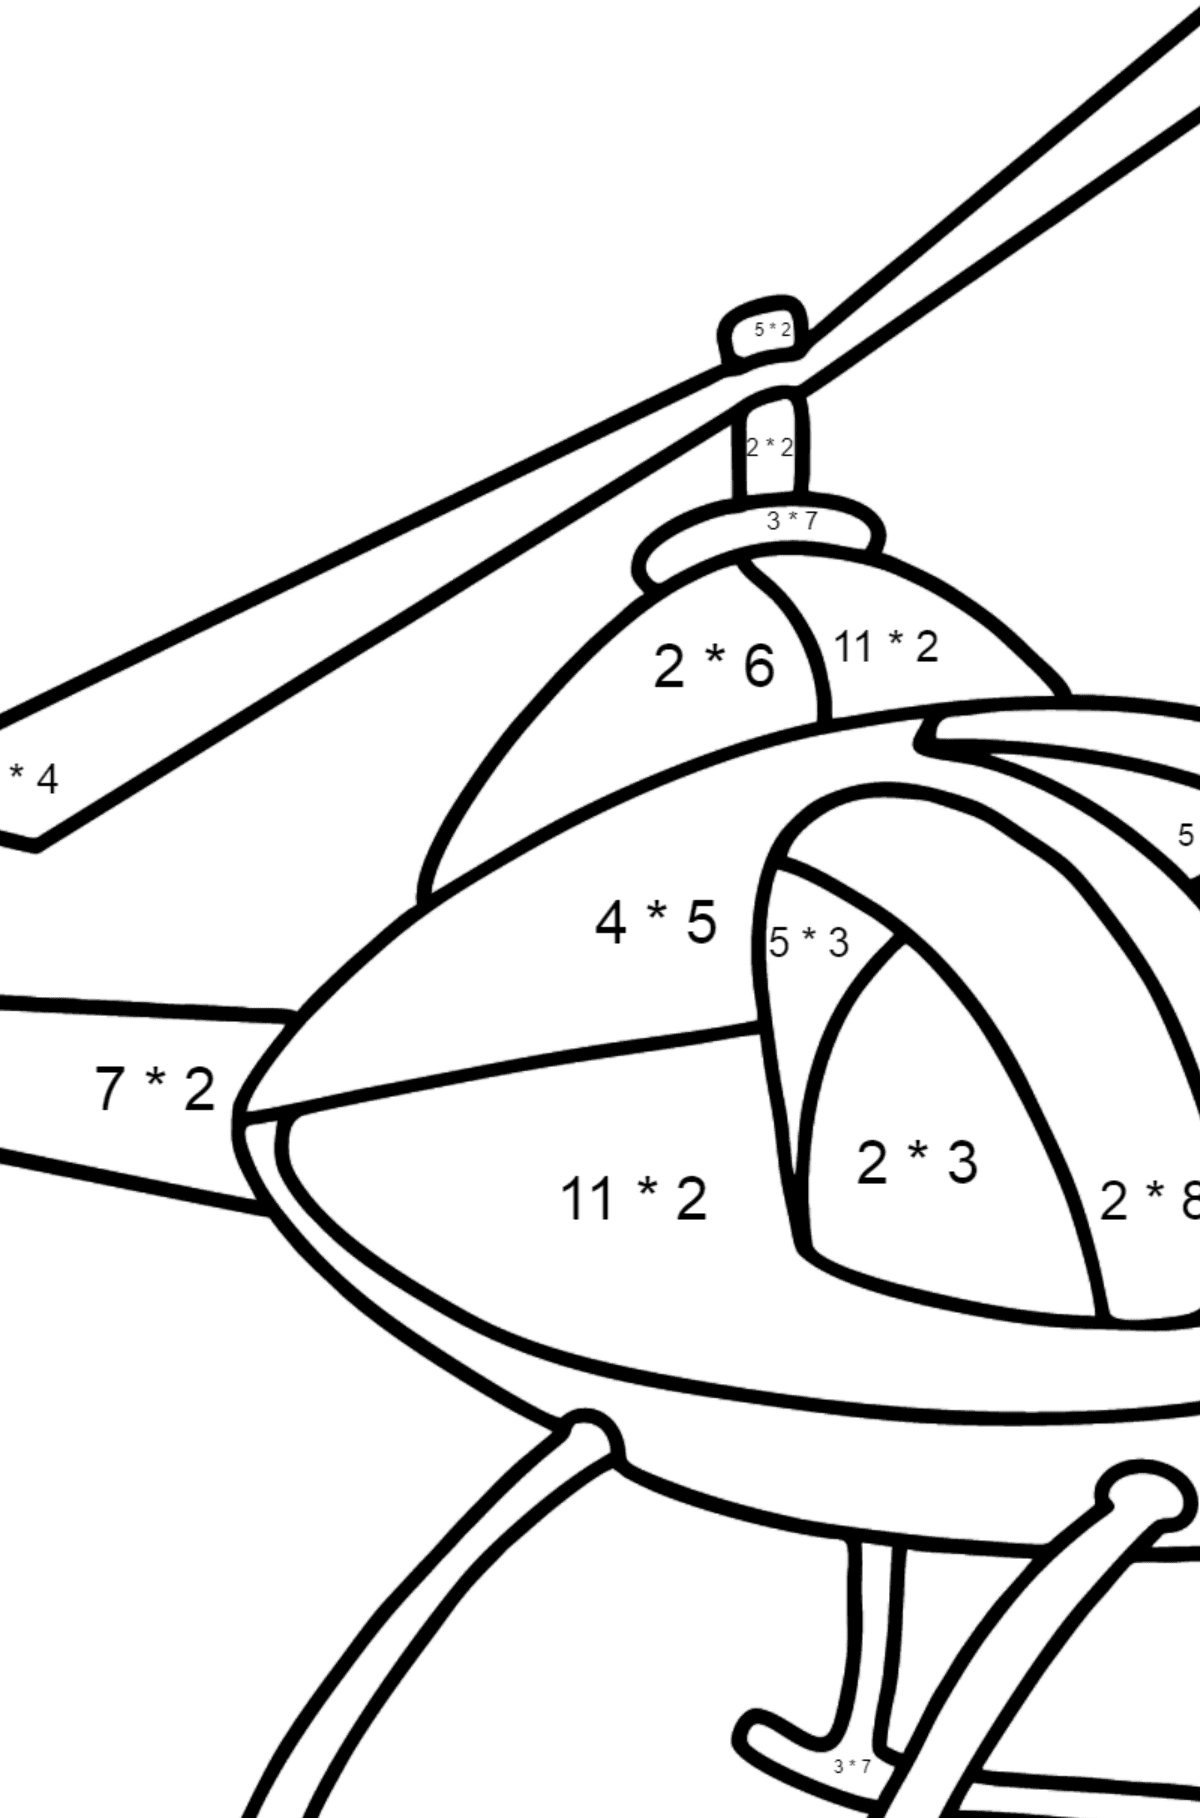 Página para colorear de helicópteros para niños - Colorear con Matemáticas - Multiplicaciones para Niños